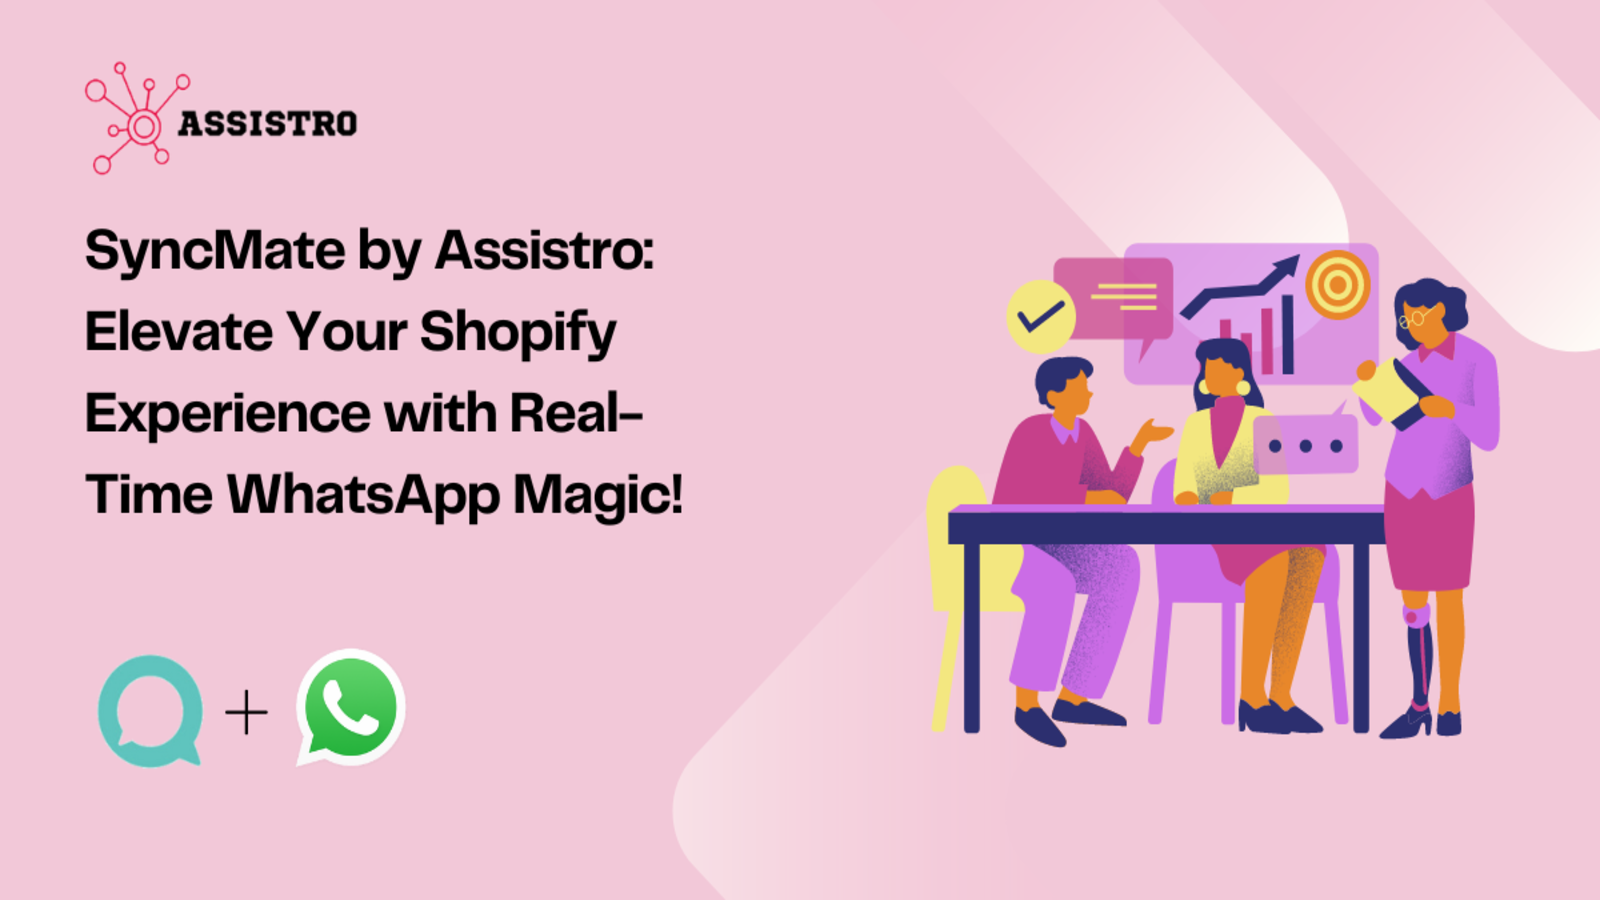 SyncMate by Assistro: Verhoog de Shopify-ervaring van de klant